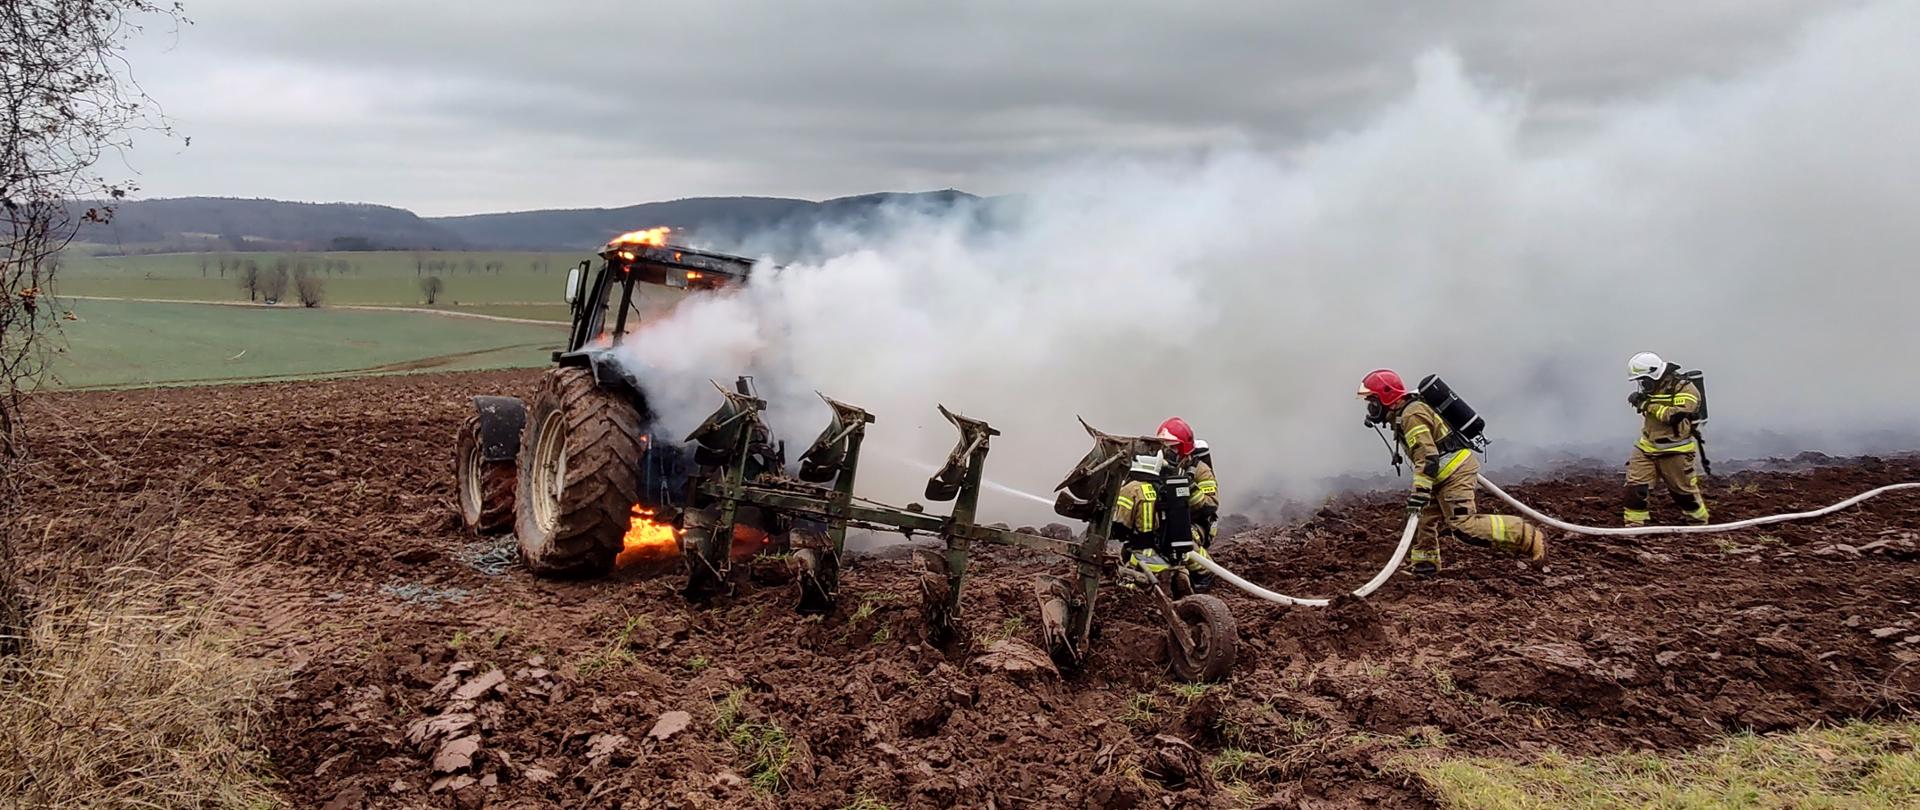 palący się ciągnika rolniczy na polu, za nim trzech strażaków gaszących pożar przy użyciu linii gaśniczej